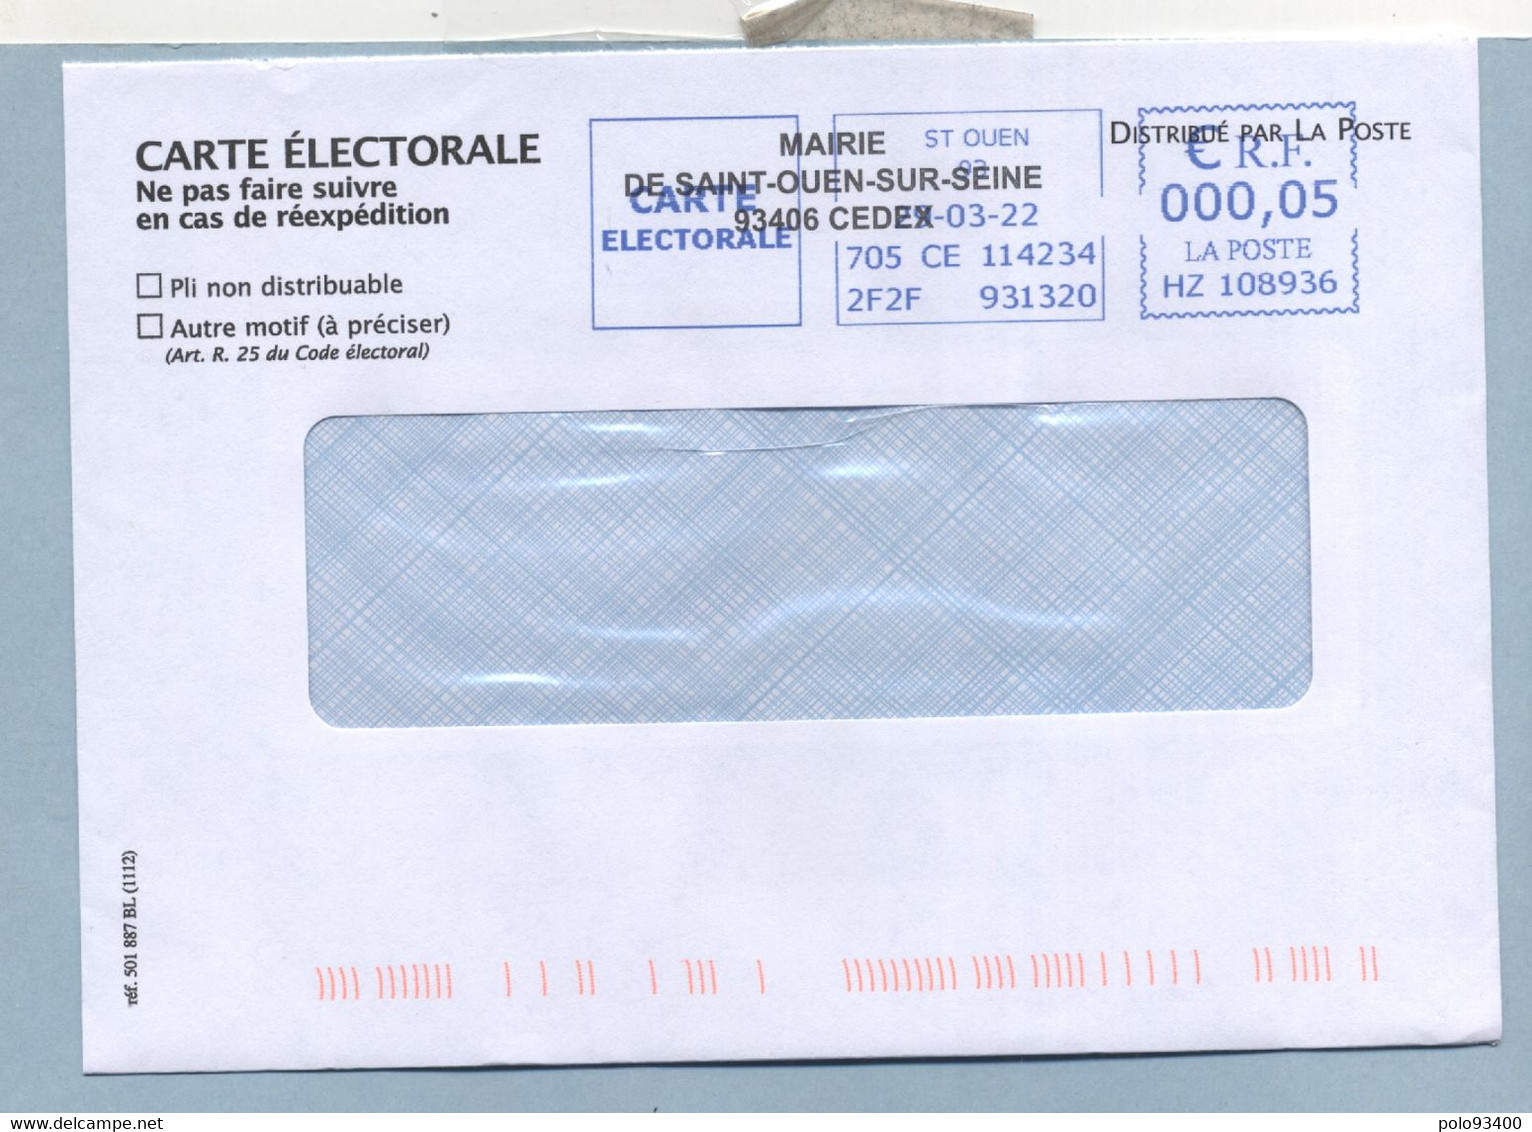 2022 Mairie De Saint-Ouen Carte D'électeur - EMA (Printer Machine)